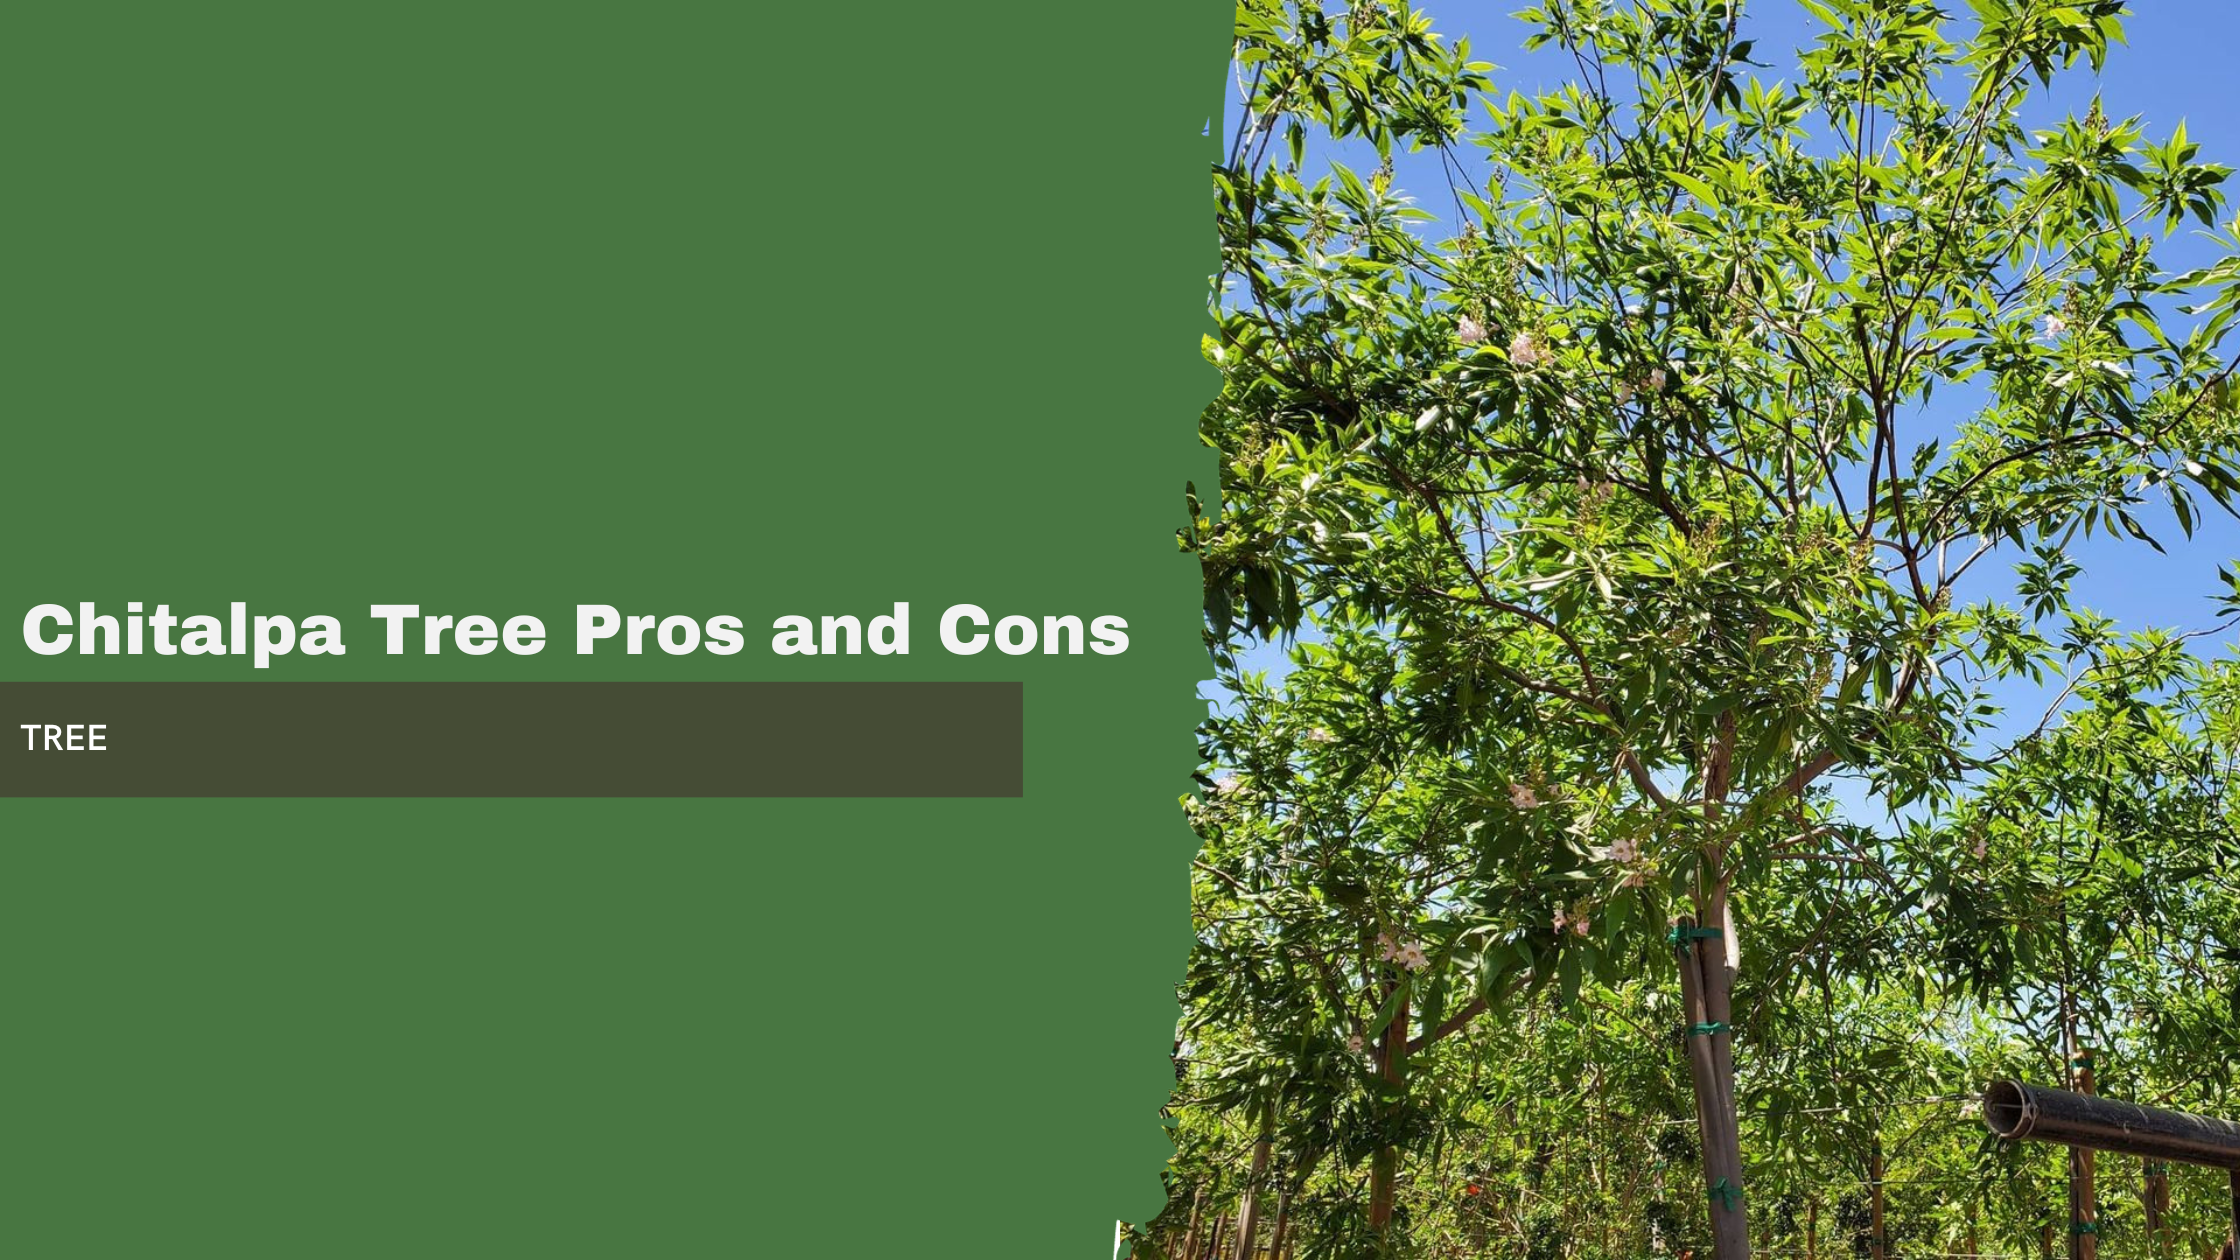 Chitalpa Tree Pros and Cons